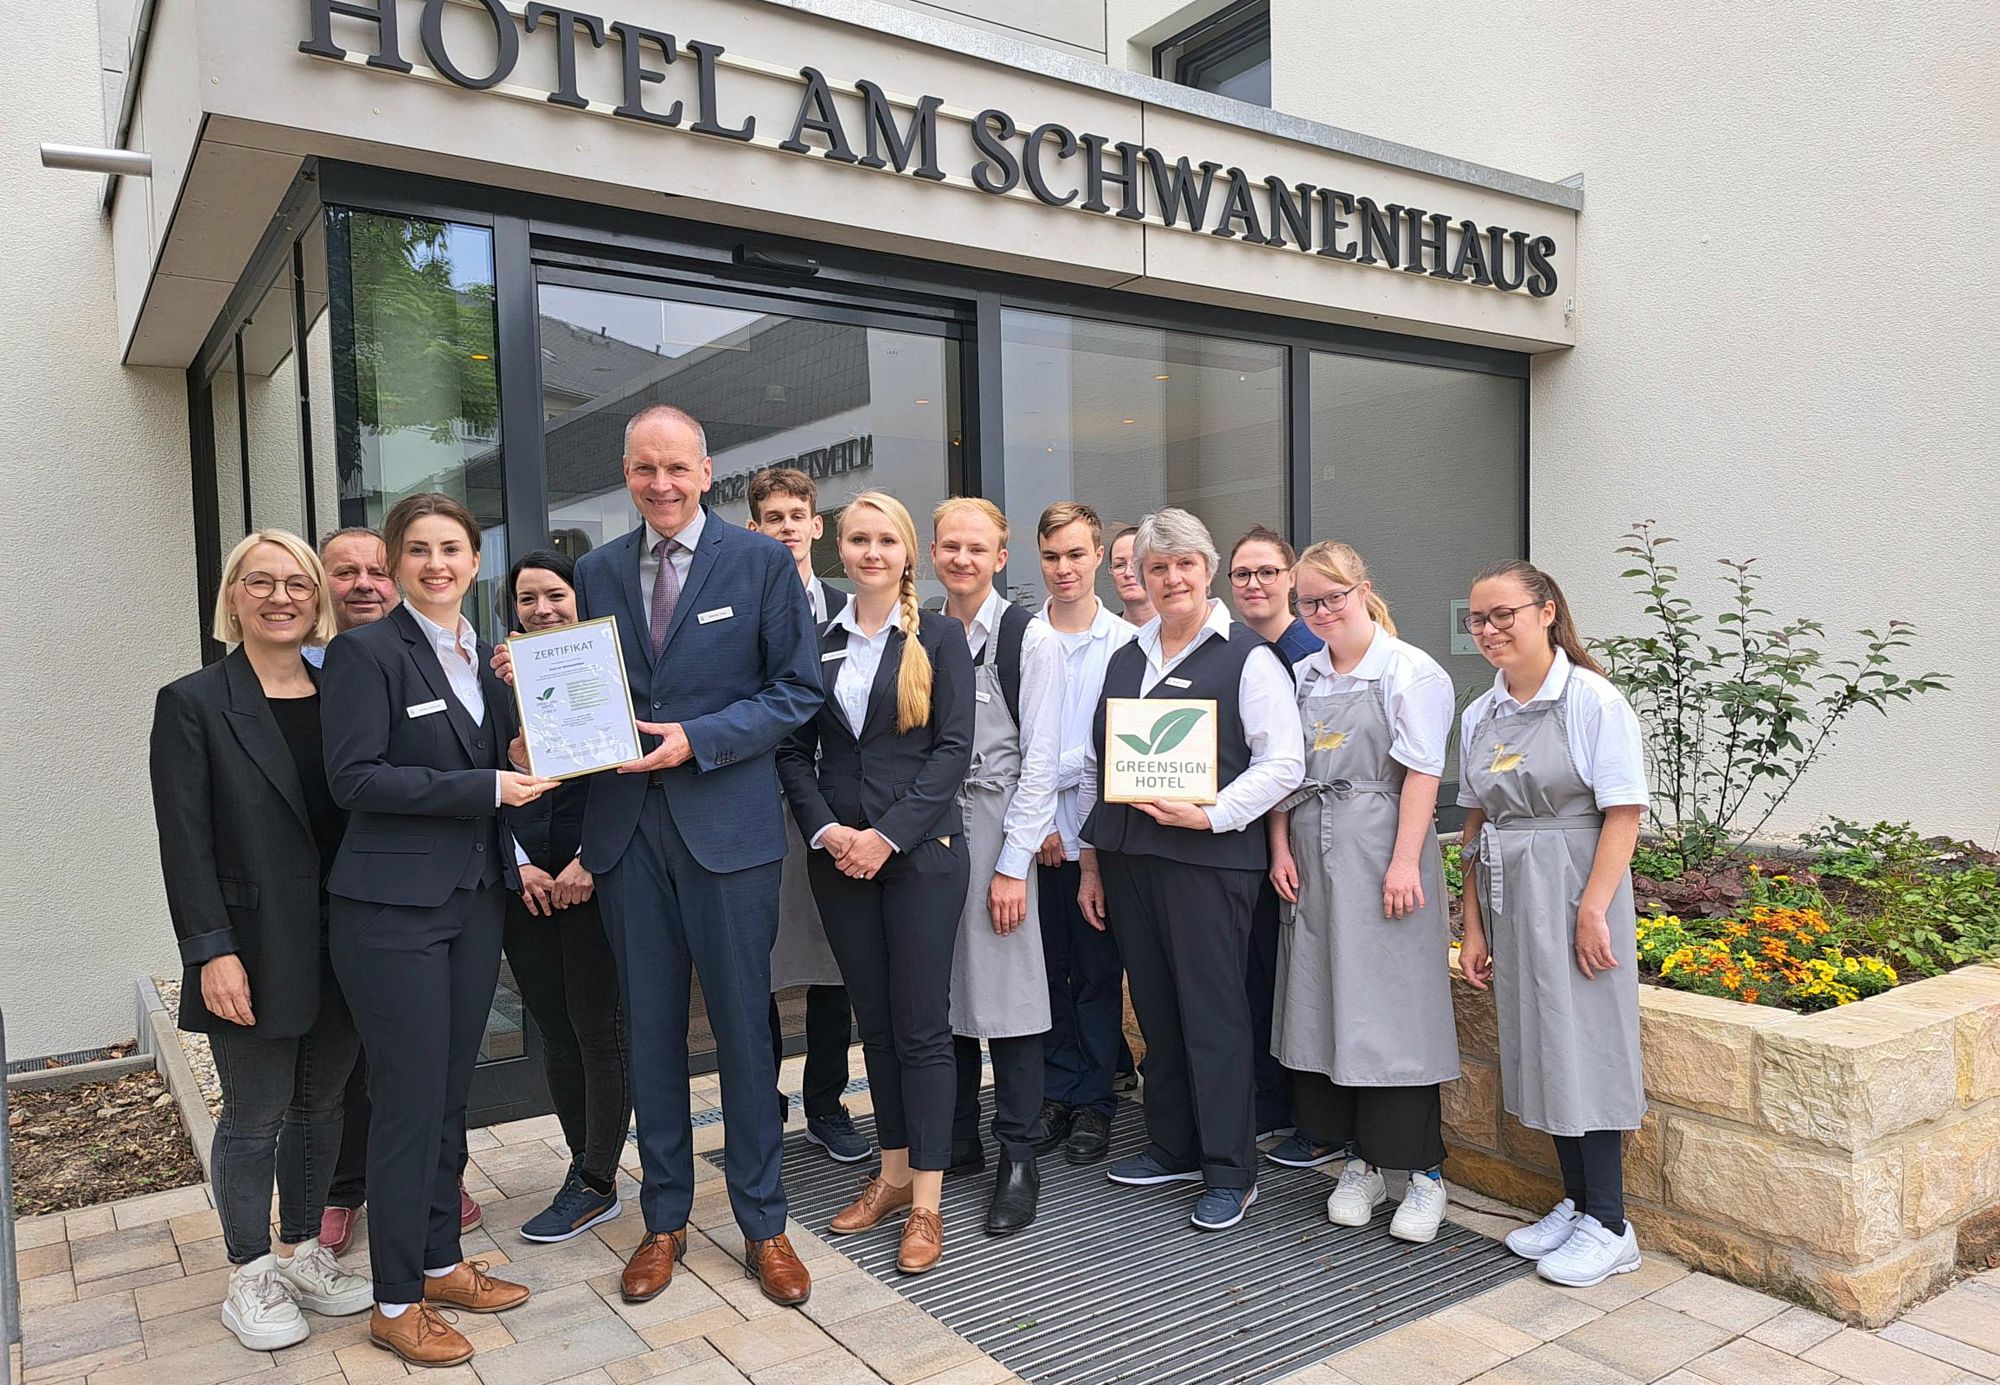 Mächtig stolz auf die Auszeichnung - Das Team vom Hotel Schwanenhaus. Foto: PR